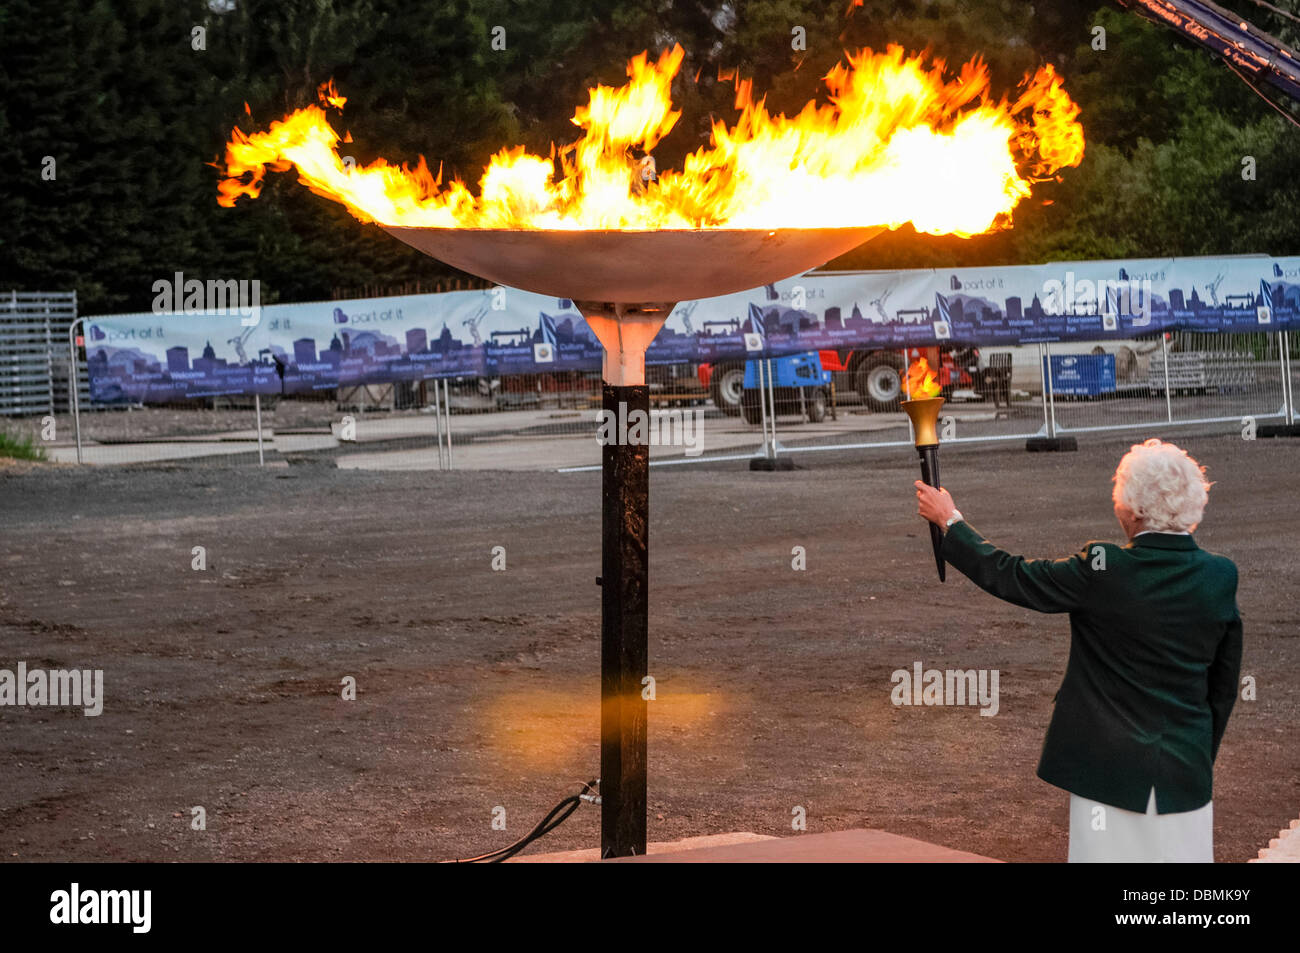 Belfast, Irlande du Nord. 1er août 2013 - Dame Mary Peters s'allume la vasque sur le monde des jeux de police et d'incendie (WPFG) Cérémonie d'ouverture Crédit : Stephen Barnes/Alamy Live News Banque D'Images